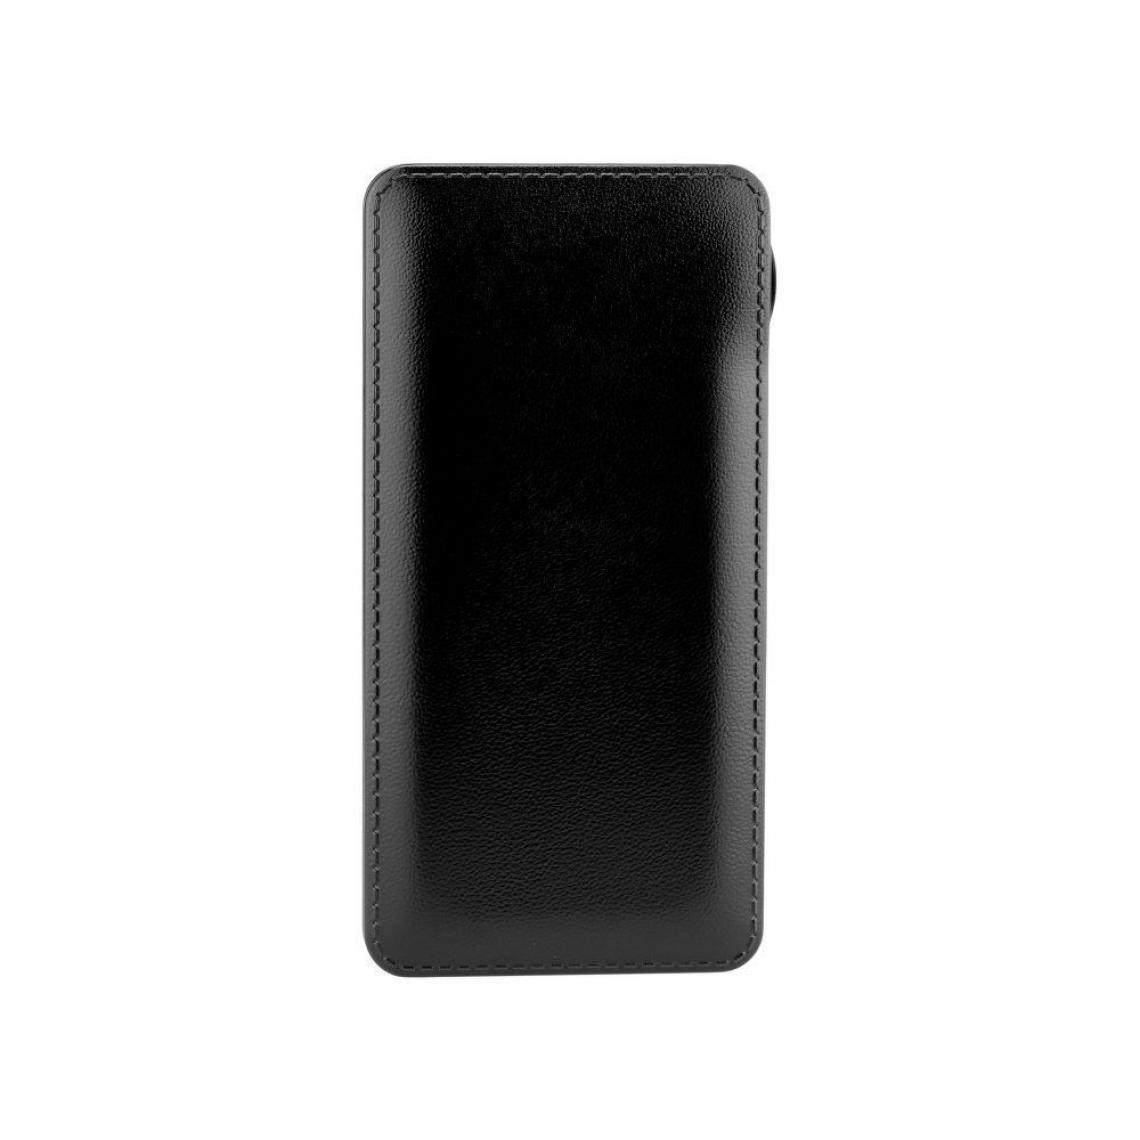 Ozzzo - Chargeur batterie externe 20000 mAh powerbank ozzzo noir pour HTC U Play - Autres accessoires smartphone